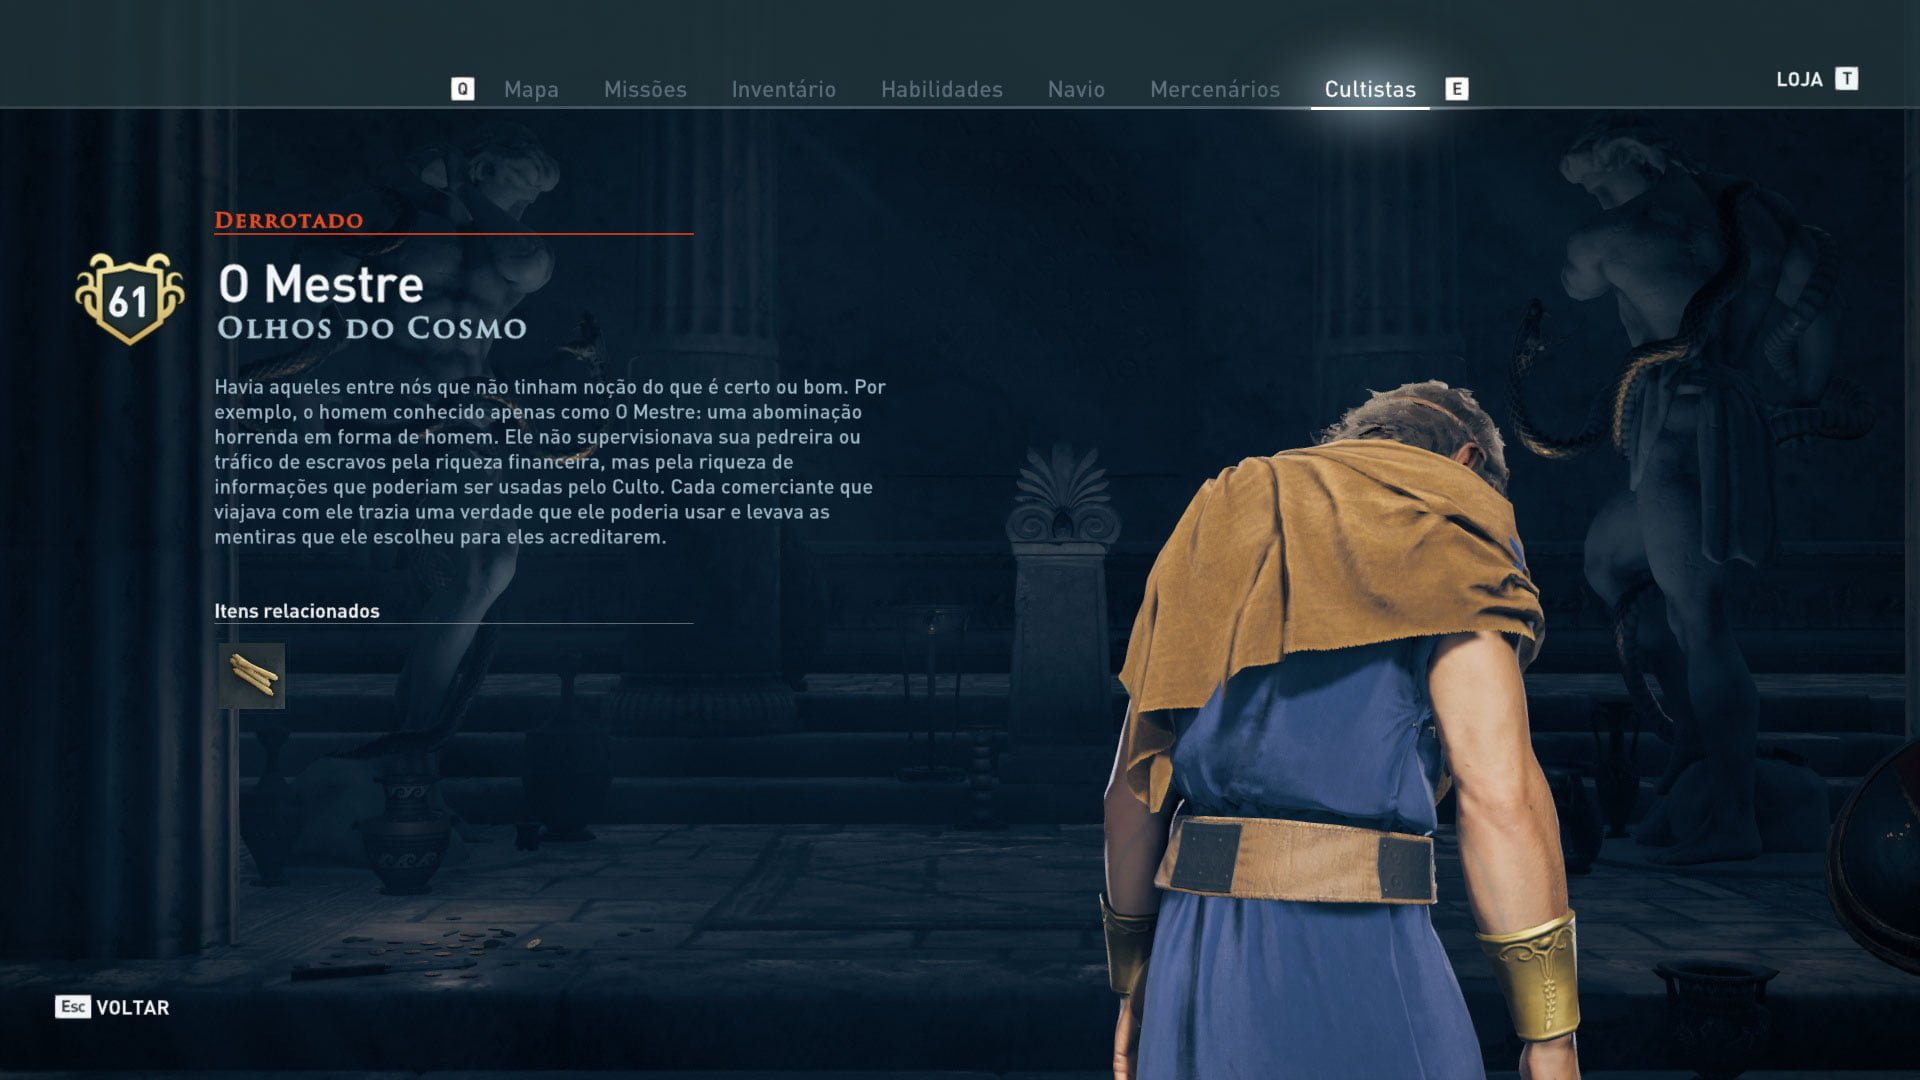 Ассасин одиссея глаз космоса. Шахта в Аттике Assassins Creed Odyssey культист. Шахта в Аттике Assassins Creed Odyssey. Ассасин Одиссея культист хозяин. Шахты в Аттике Assassins Creed Odyssey культист.